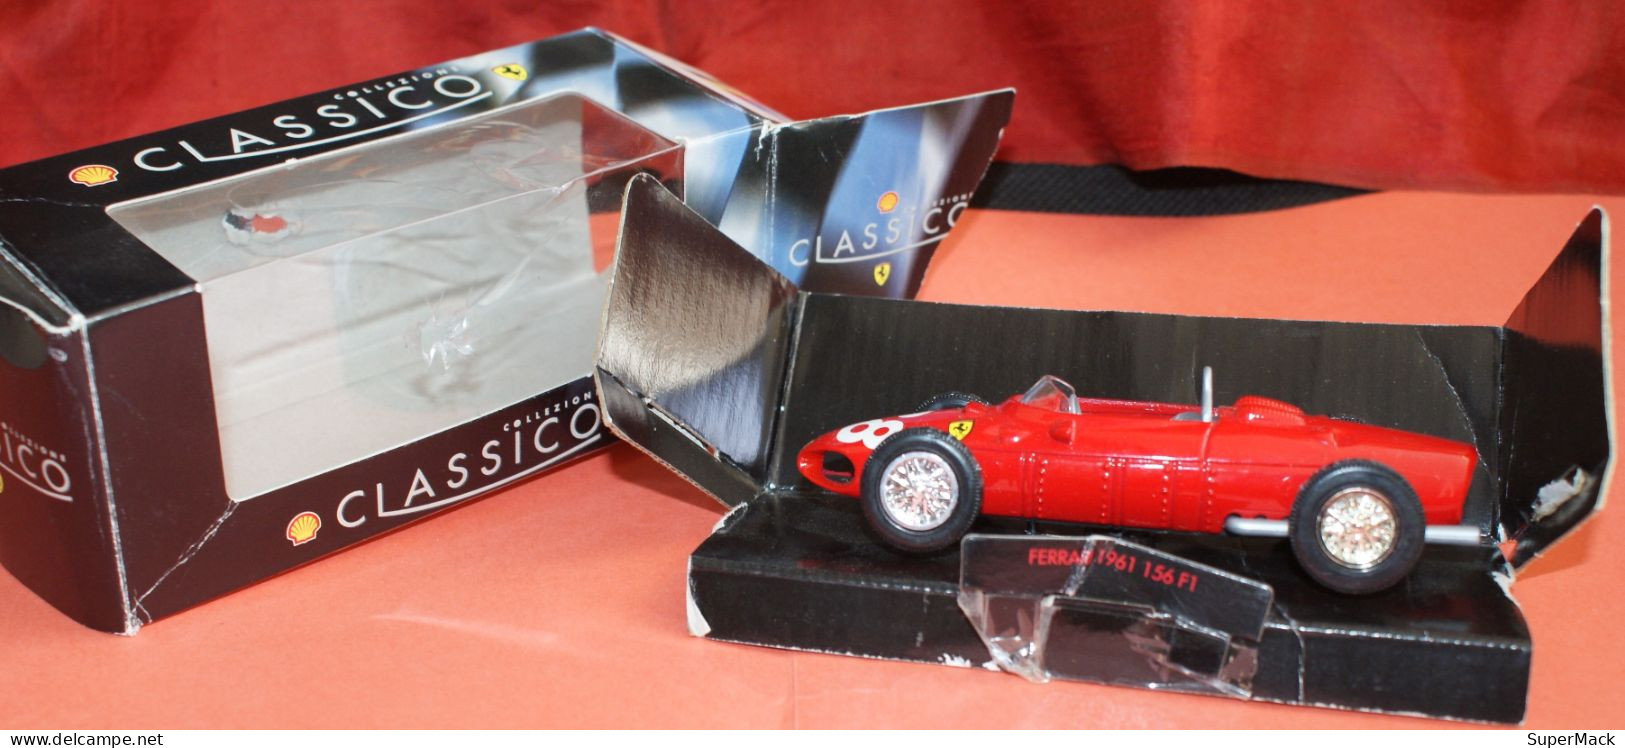 SHELL Classico Collezione - Ferrari 1961 156 F1 - Echelle 1:35 ### NEUVE ### - Scala 1:32